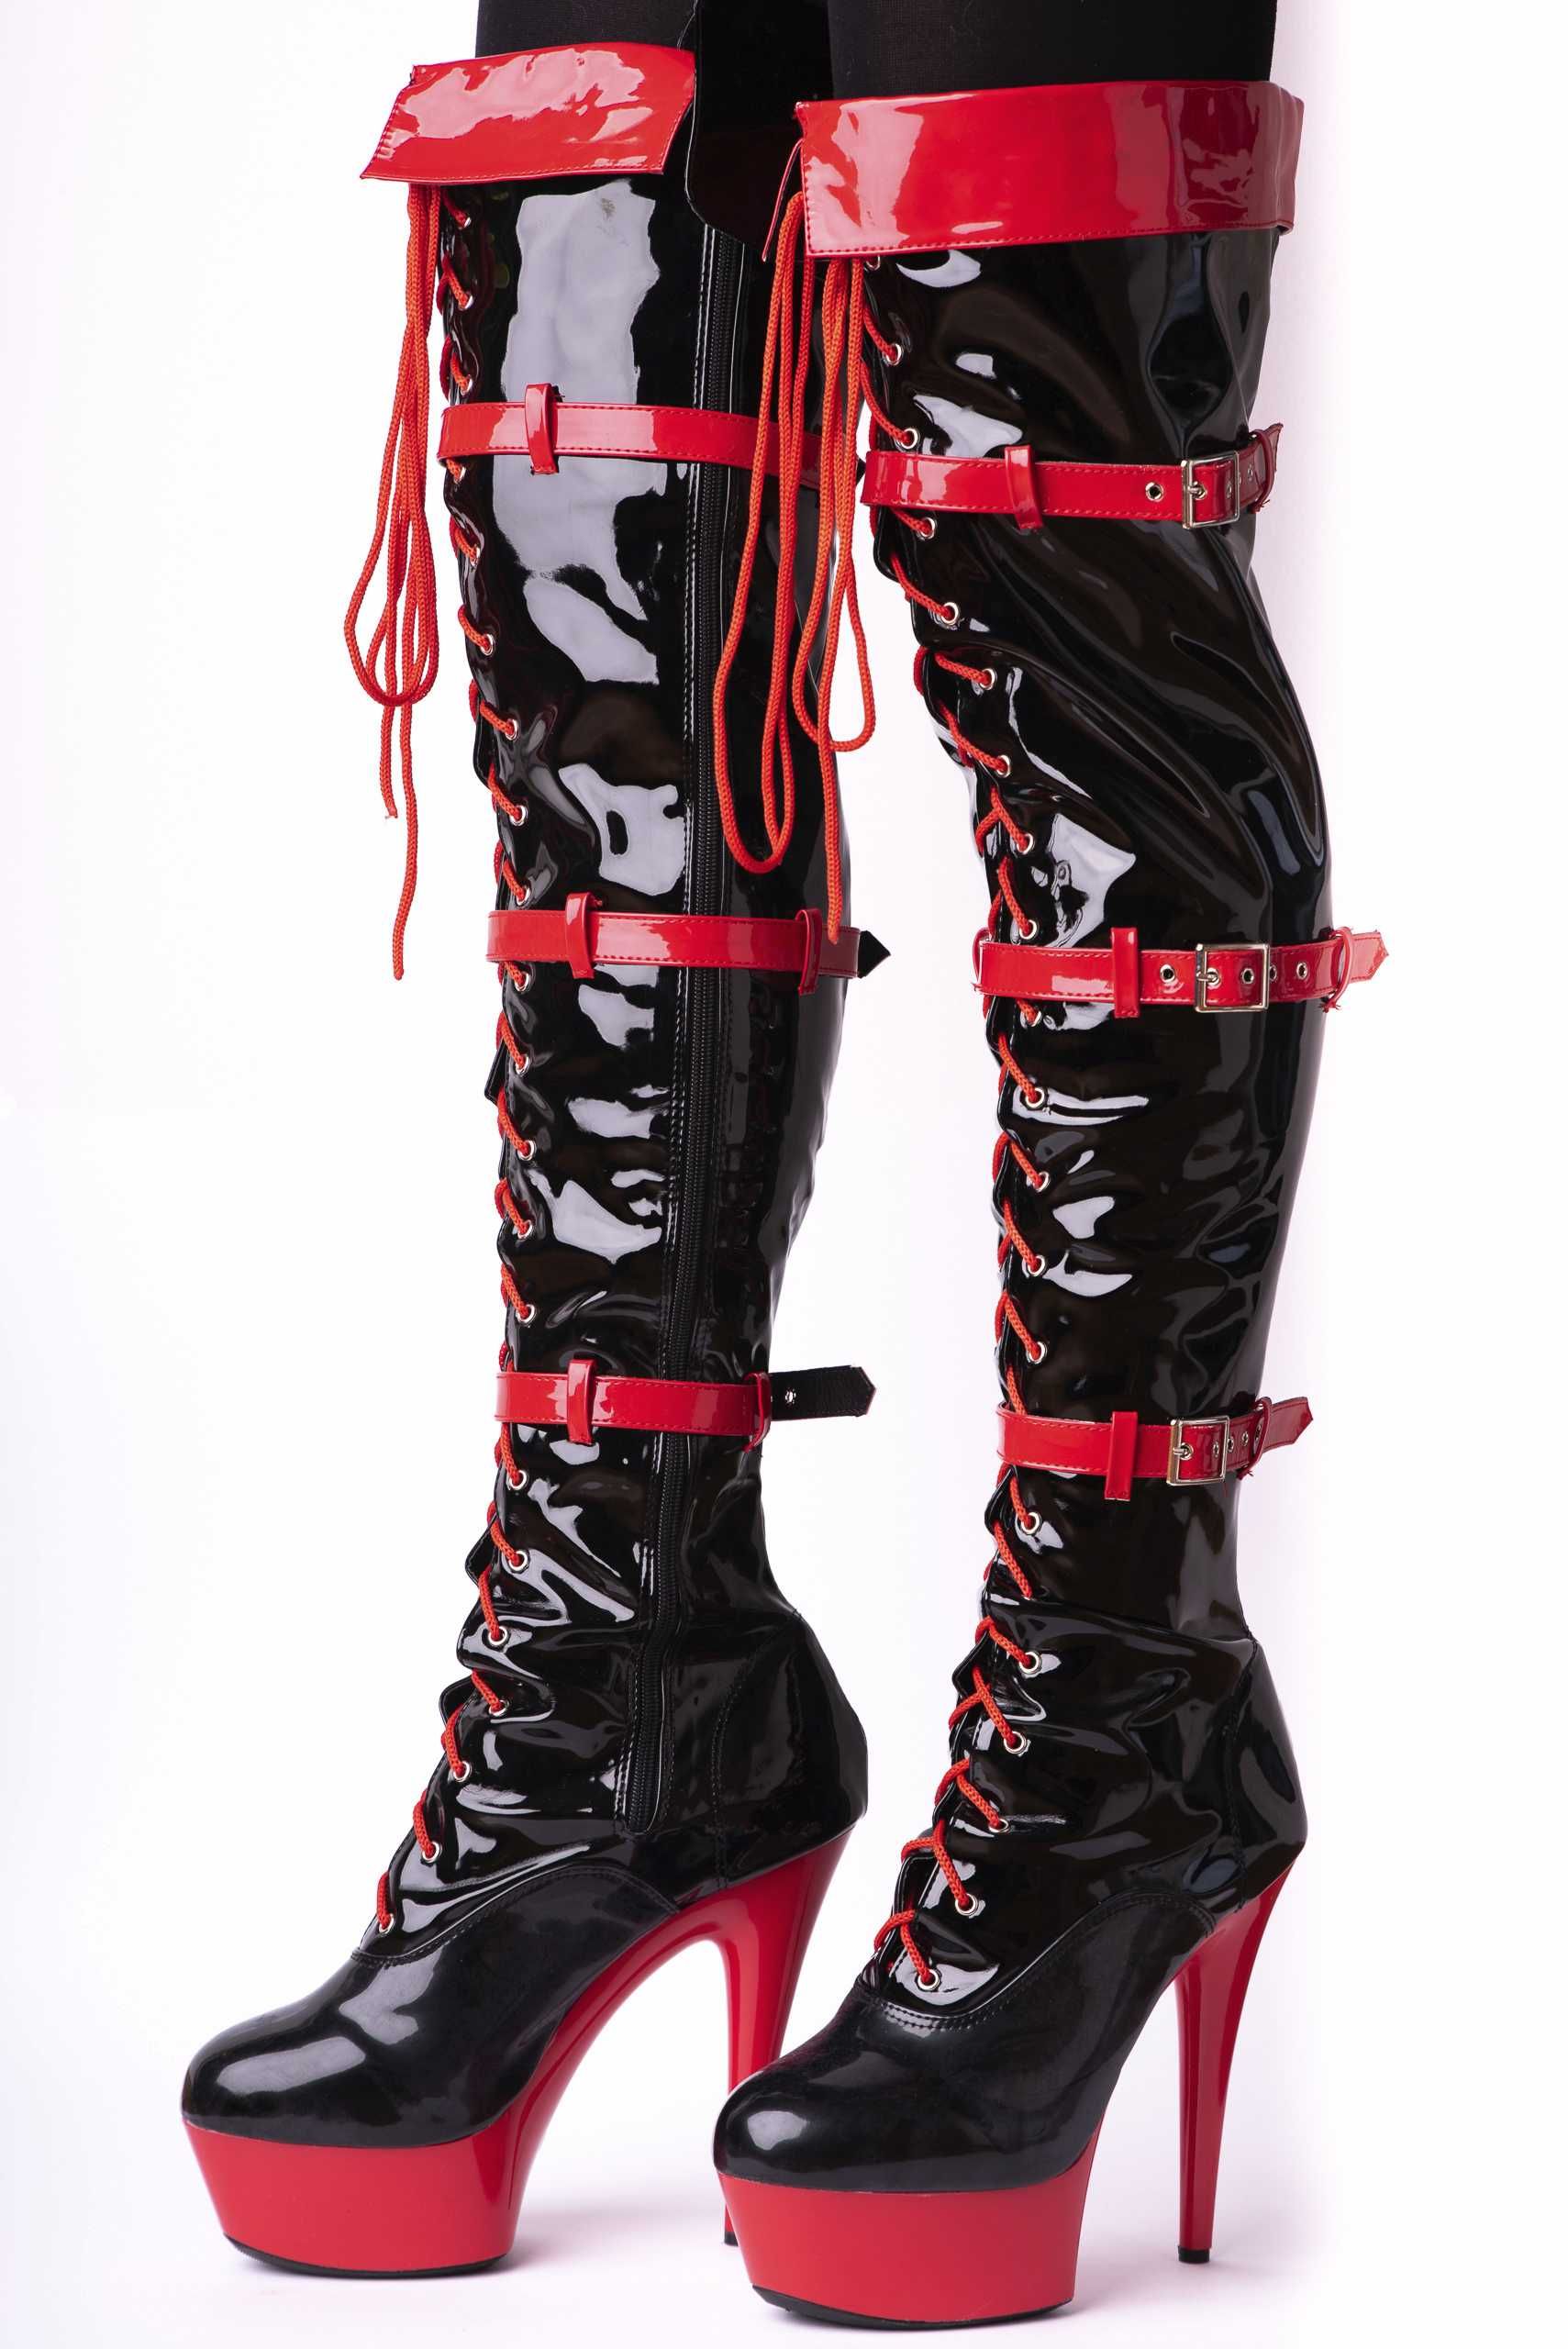 Buty kozaki czerwone czarne erotyczne wiązane błyszczące platformy 44